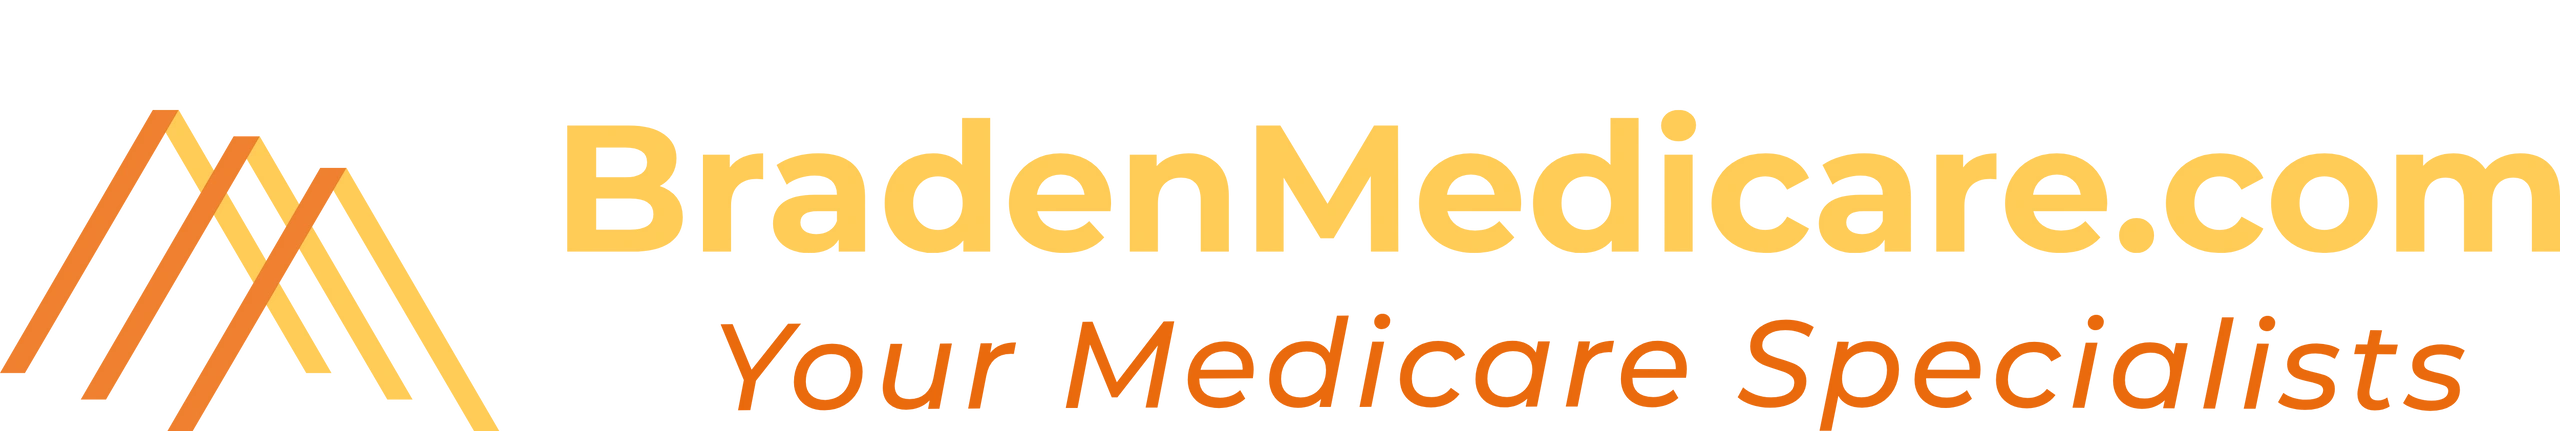 (c) Bradenmedicare.com